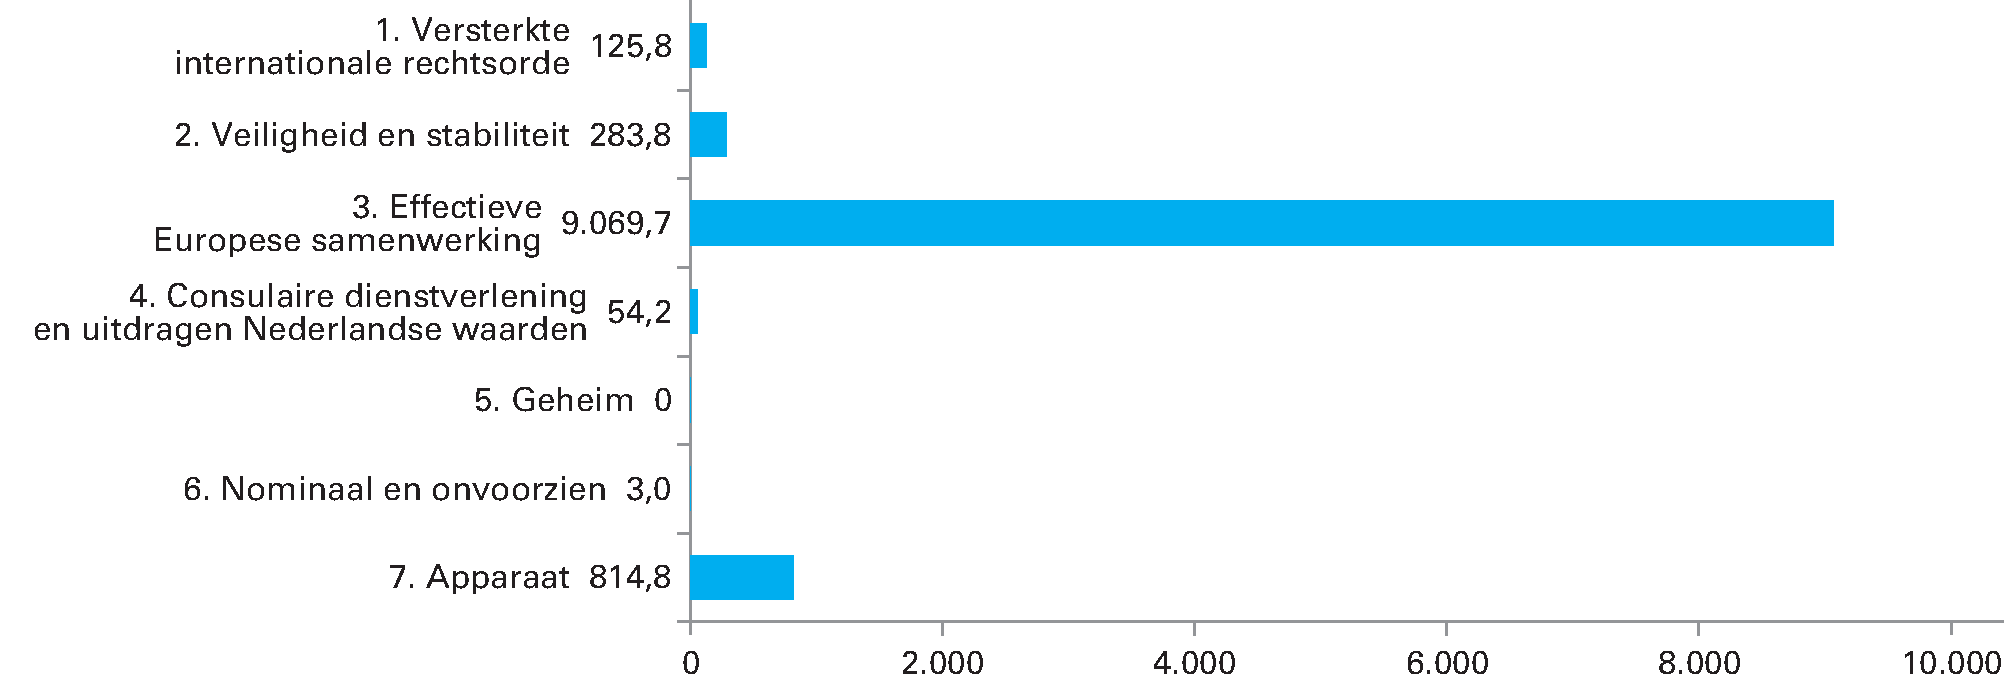 Uitgaven begroting Ministerie van Buitenlandse Zaken 2020 (in miljoenen EURO). Totaal 10.351,4